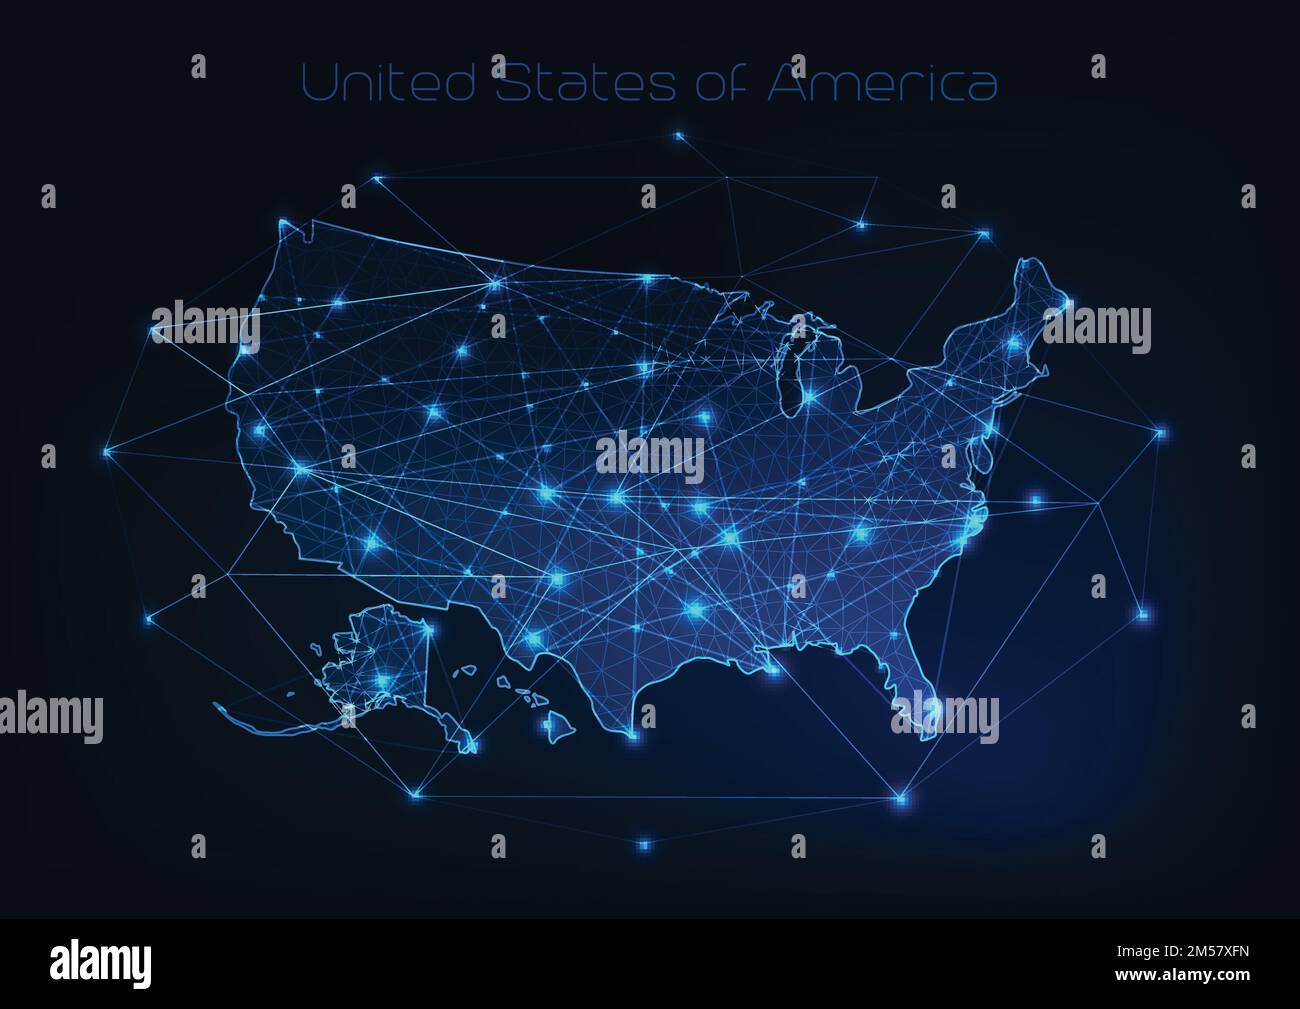 USA-Kartenrahmen mit Sternen und Linien abstraktes Framework. Kommunikation, Verbindungskonzept. Modern futuristisch niedrig polygonal, w Stock Vektor